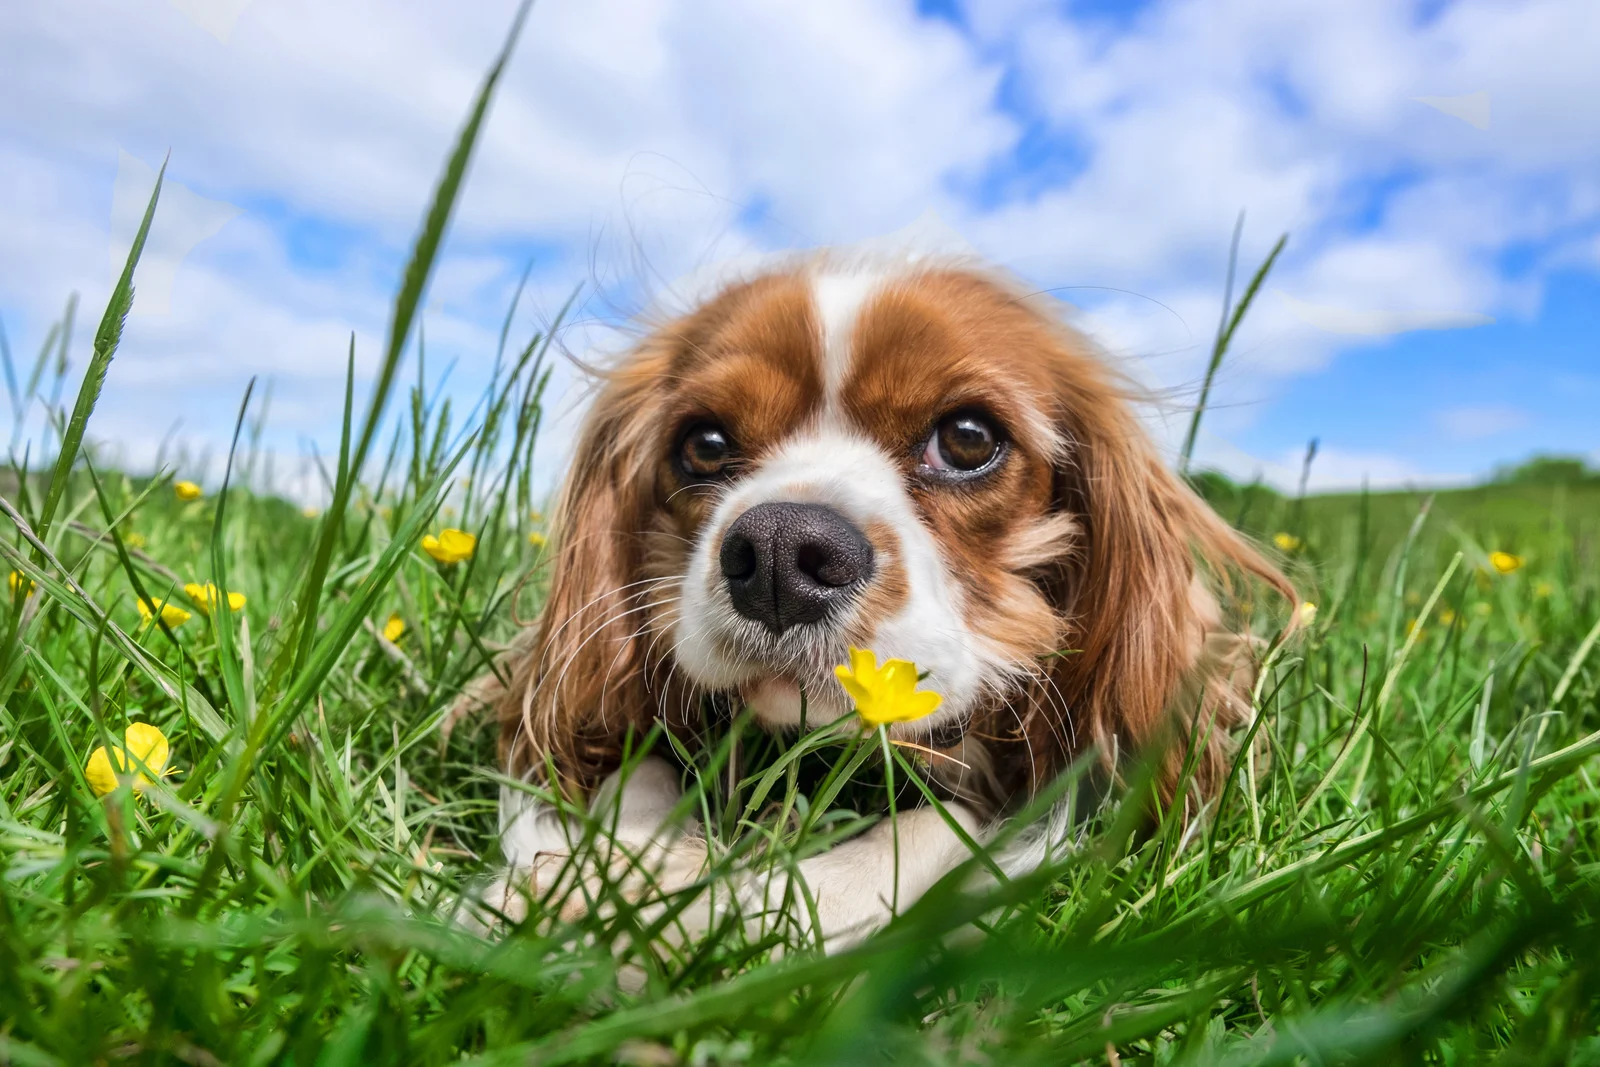 Cavalier king charles hond ligt in gras met blauwe hemel en wolken op achtergrond